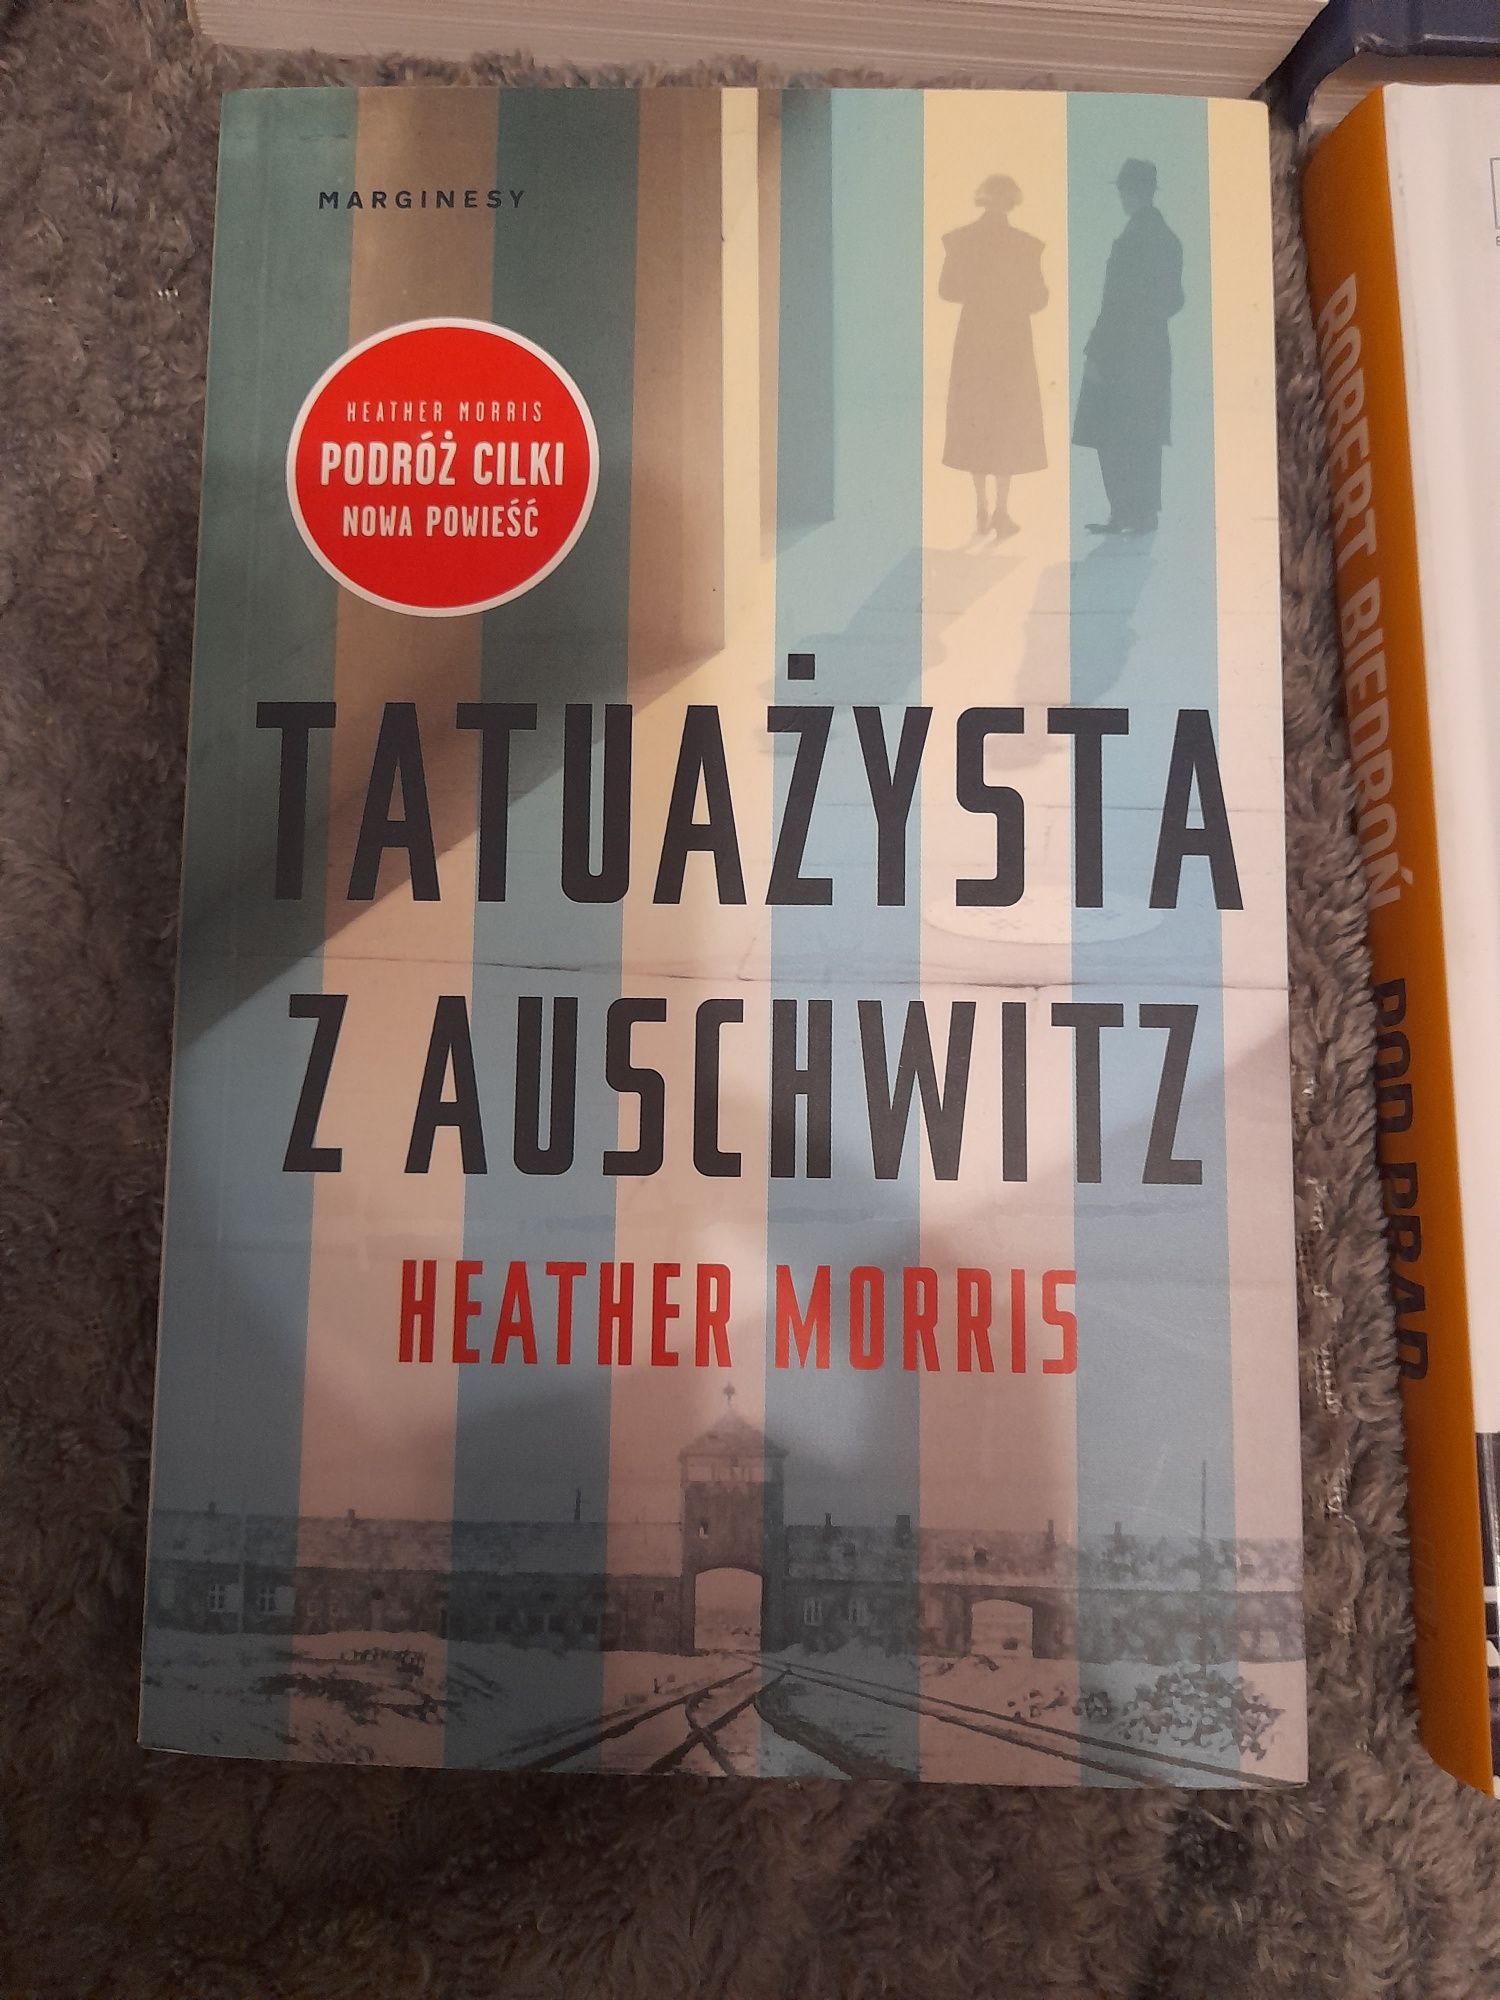 Książka Heather Morris " Tatuażysta z Auschwitz"